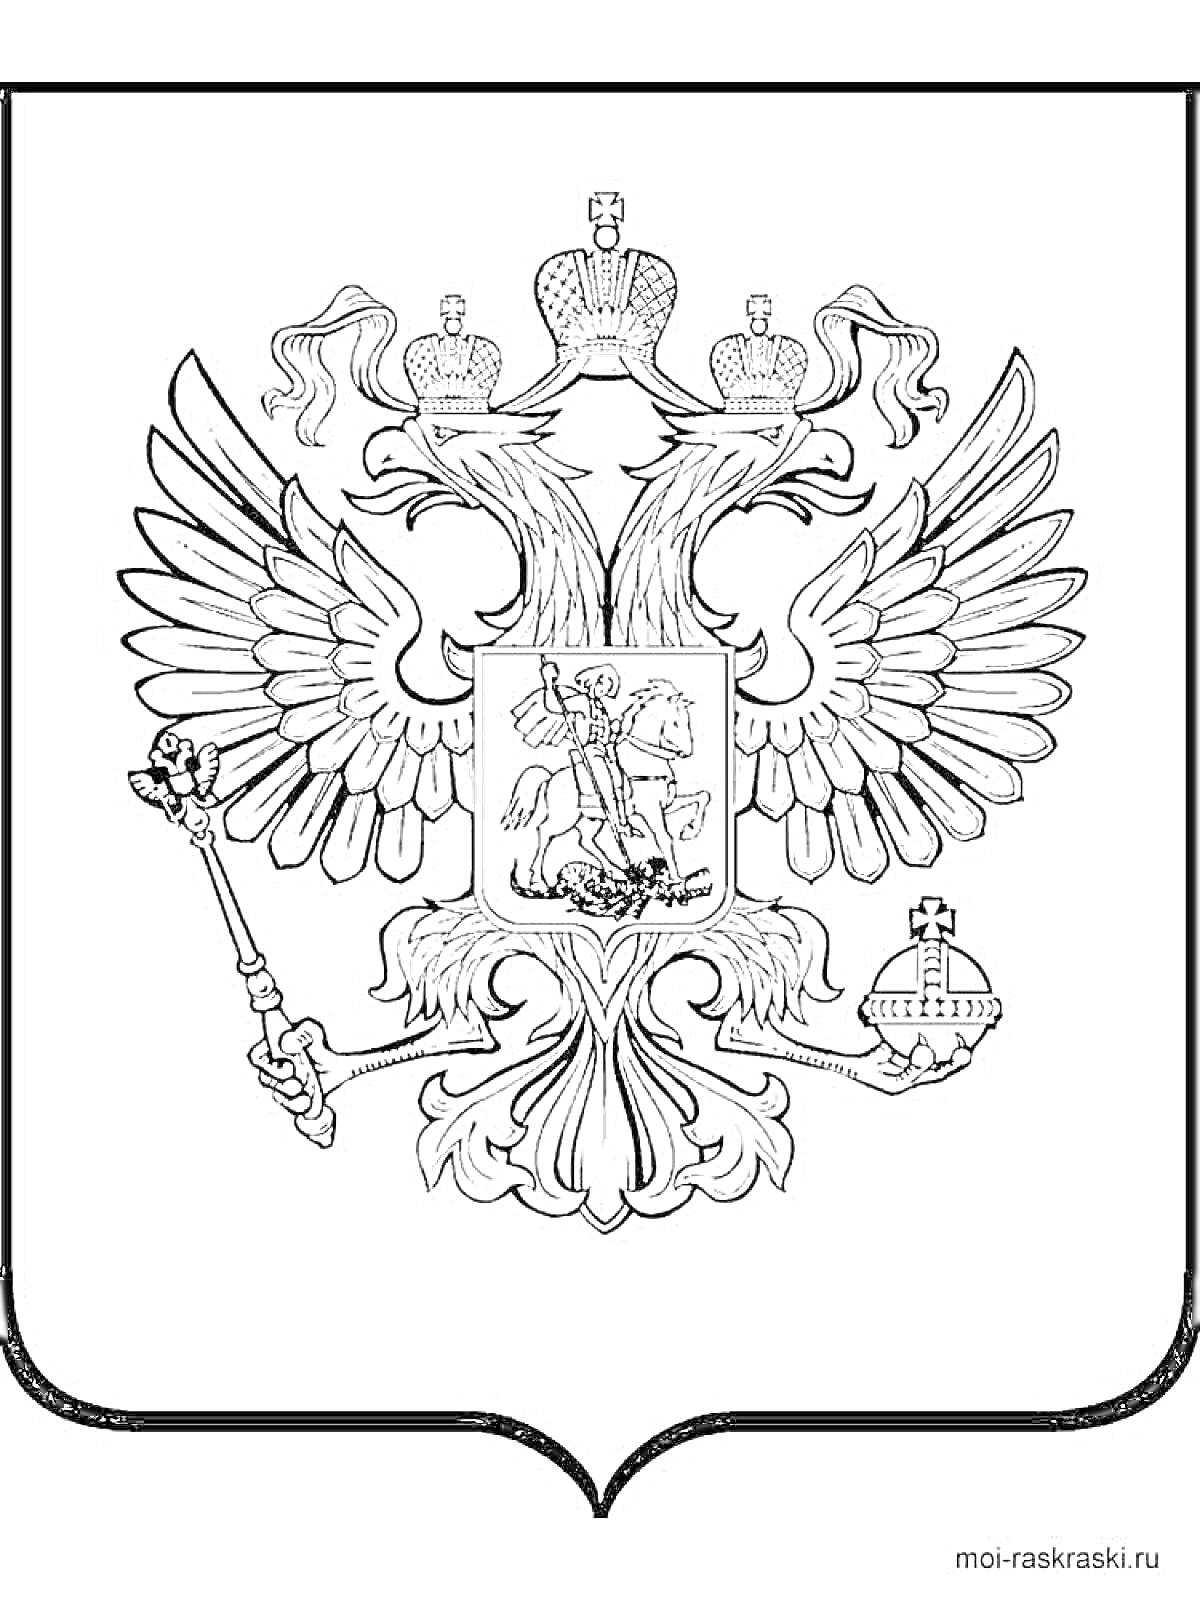 Герб России с двуглавым орлом, имперскими коронами, скипетром, державой и святым Георгием Победоносцем